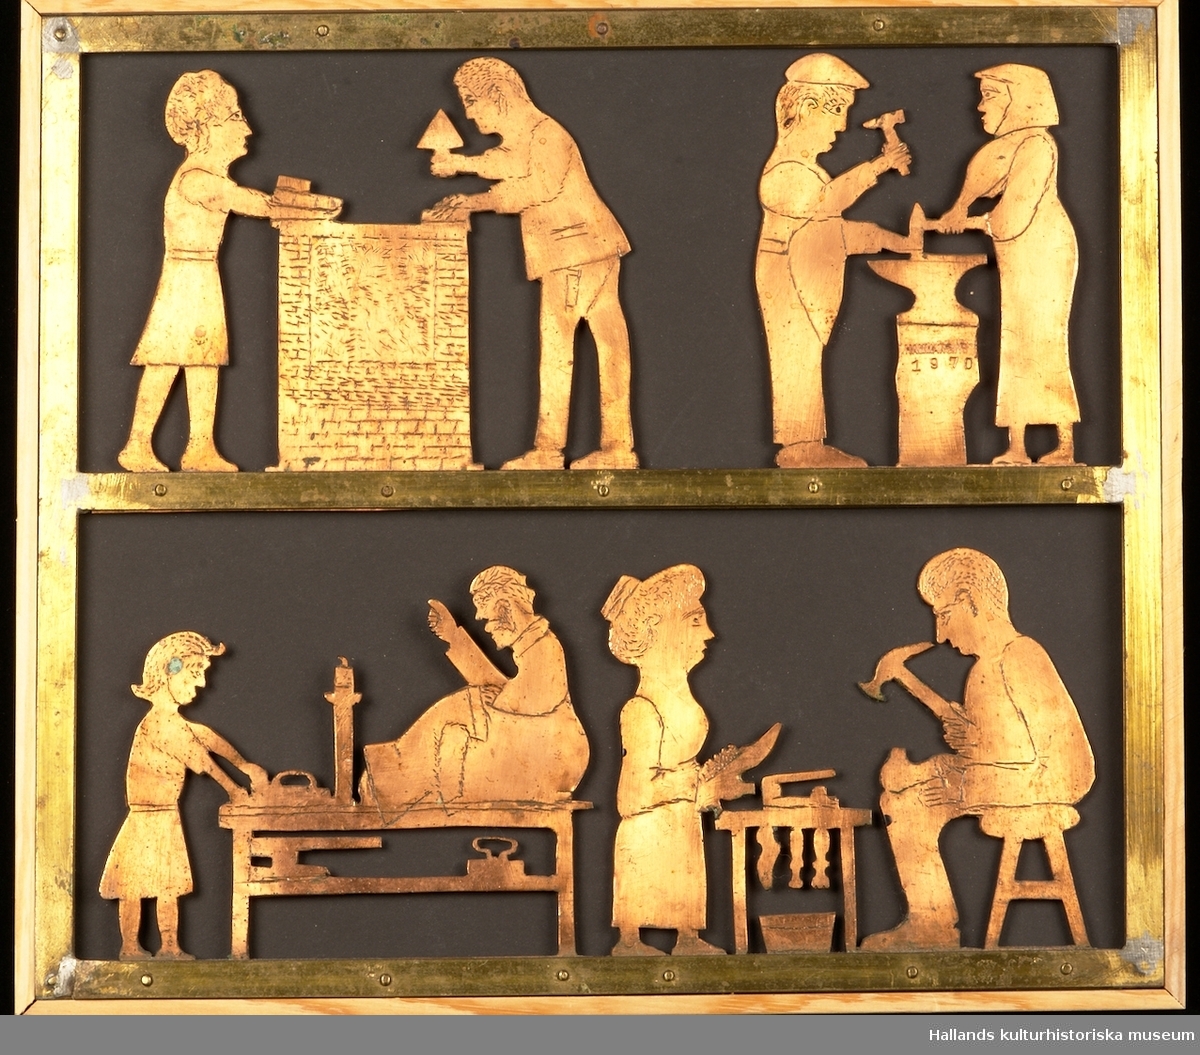 Relief föreställande fyra hantverksscener: murning, smidesarbete, textilt arbete och skomakeri.

Reliefen är tillverkad av koppar över ett ark av svart papp. Inramad i en träram av furu.